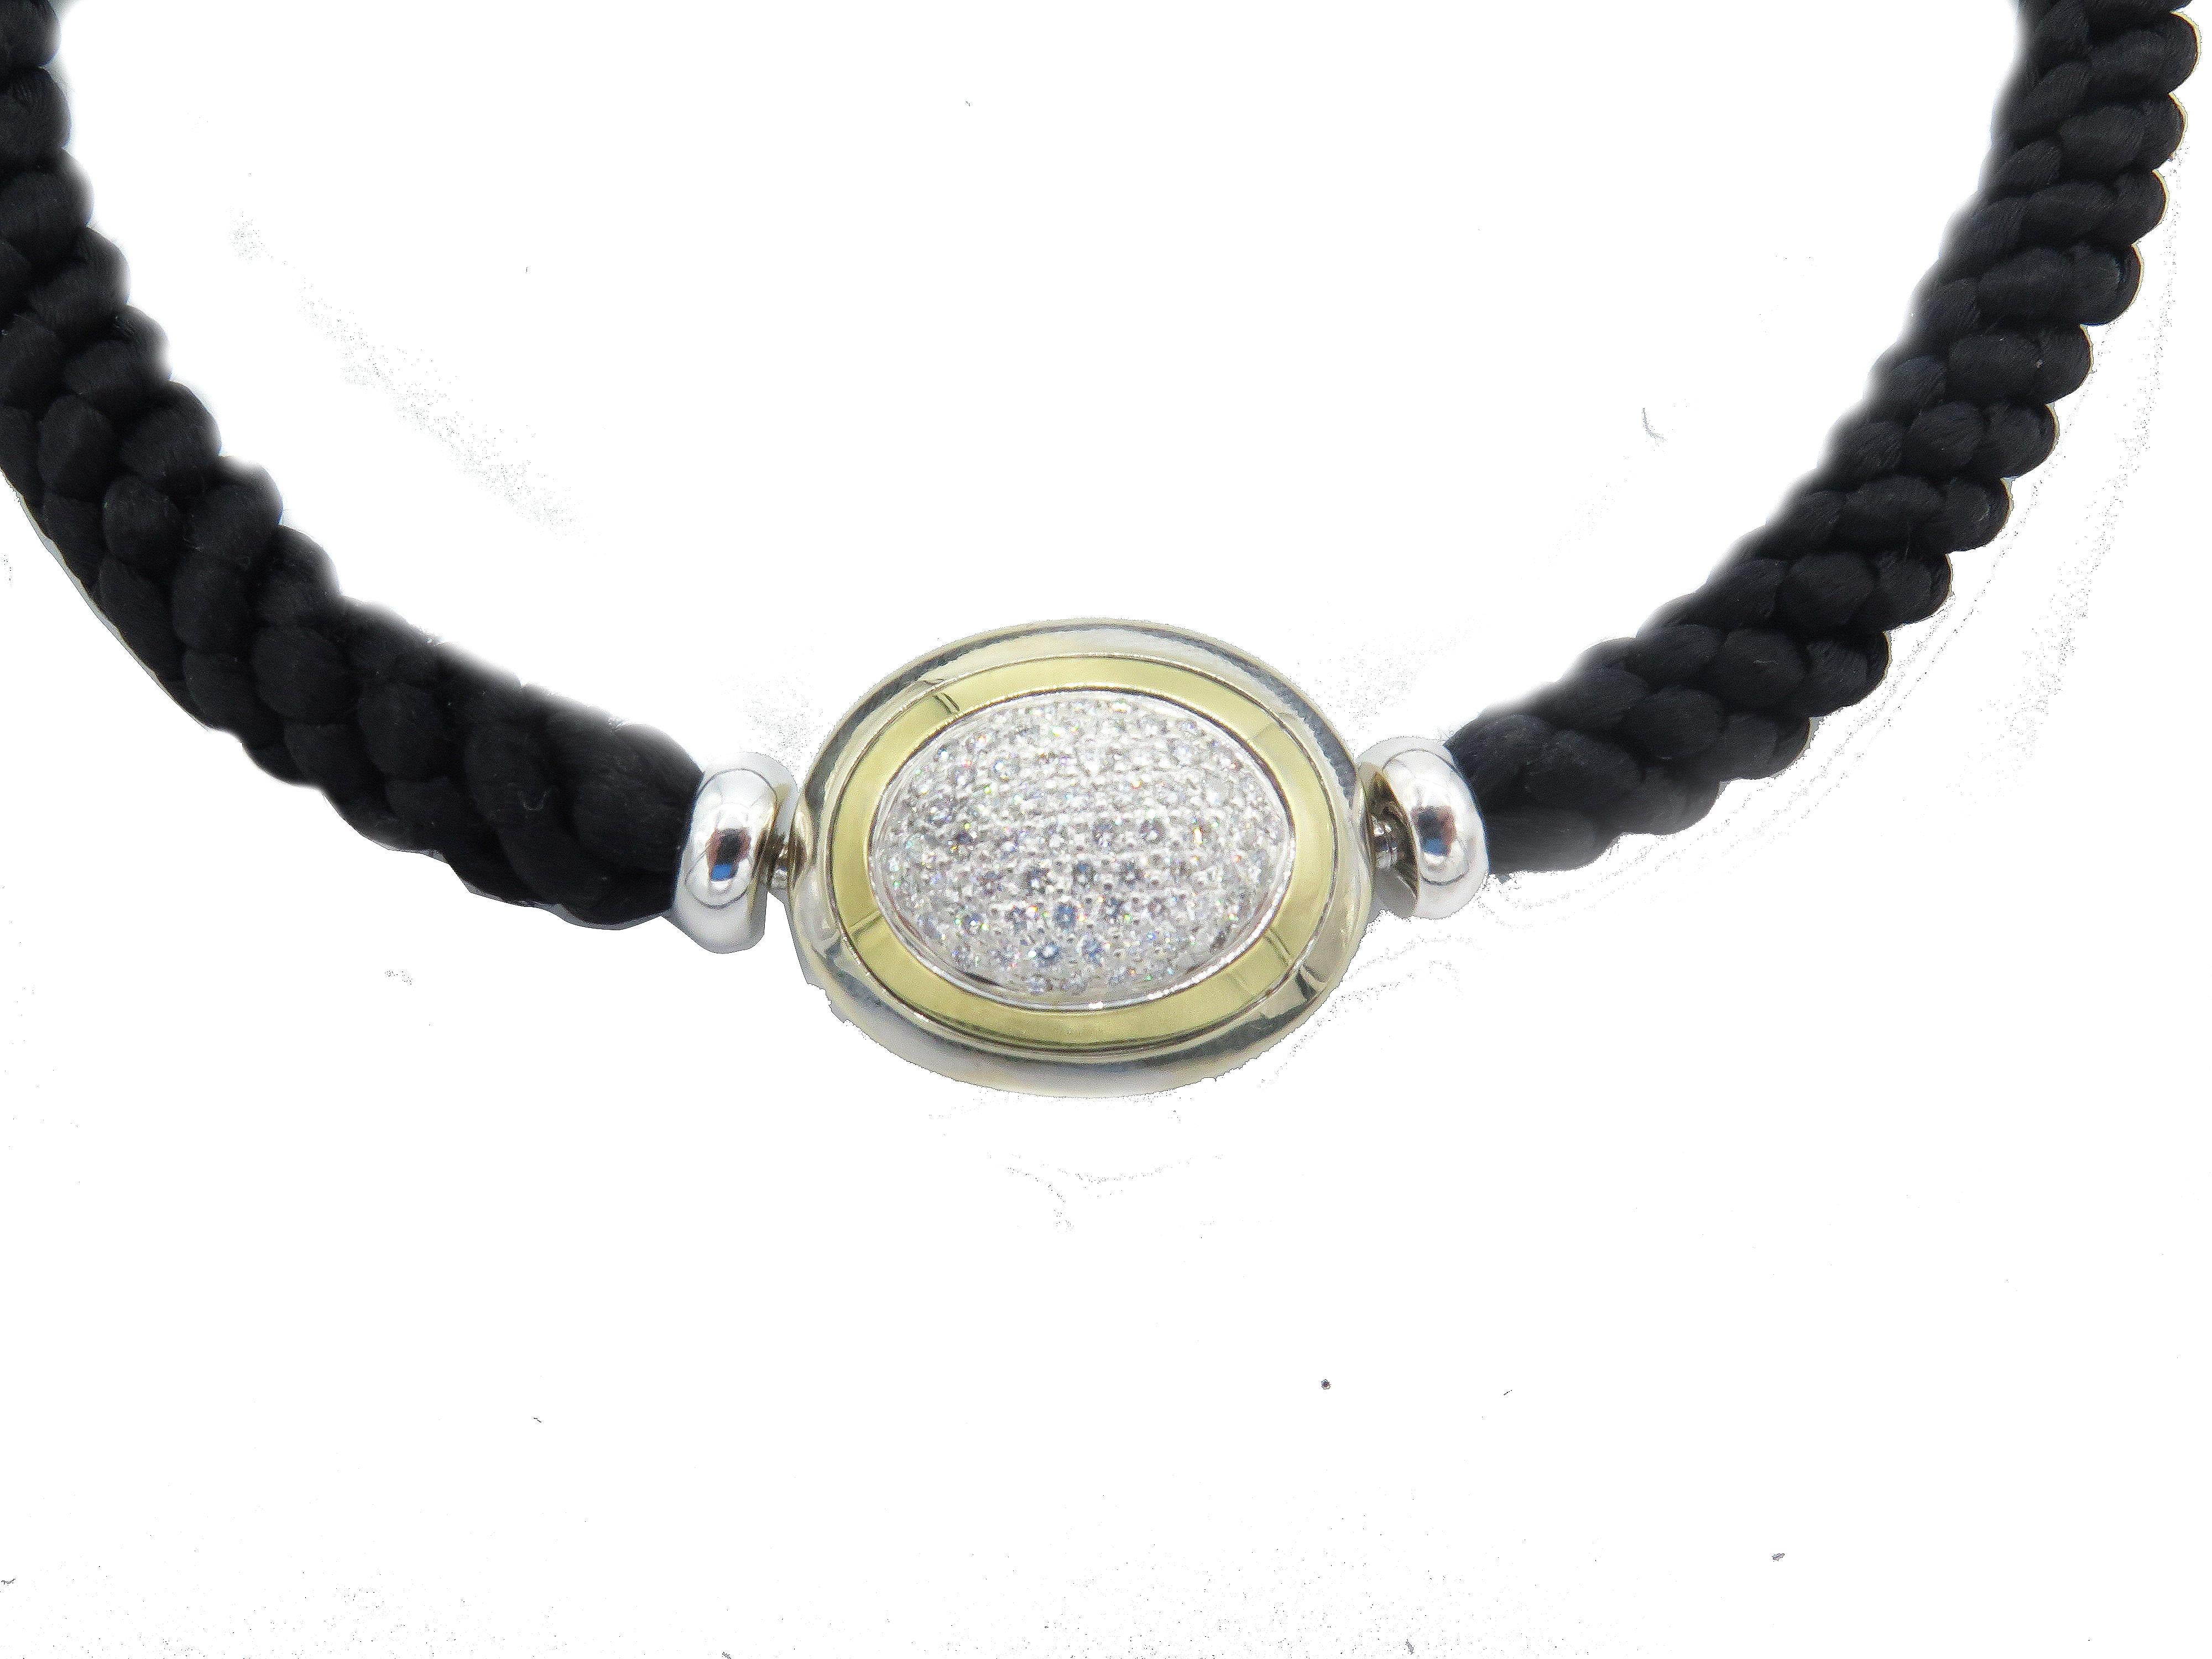  Das Hammerman Fine Diamond Choker ist ein elegantes Halsschmuckstück, das aus den hochwertigsten Materialien gefertigt wurde. Diese luxuriöse Corde-Halskette hat eine Länge von 15,75 Zoll und eine Breite/Dicke von 0,25 Zoll. Das Oval aus 18 Karat